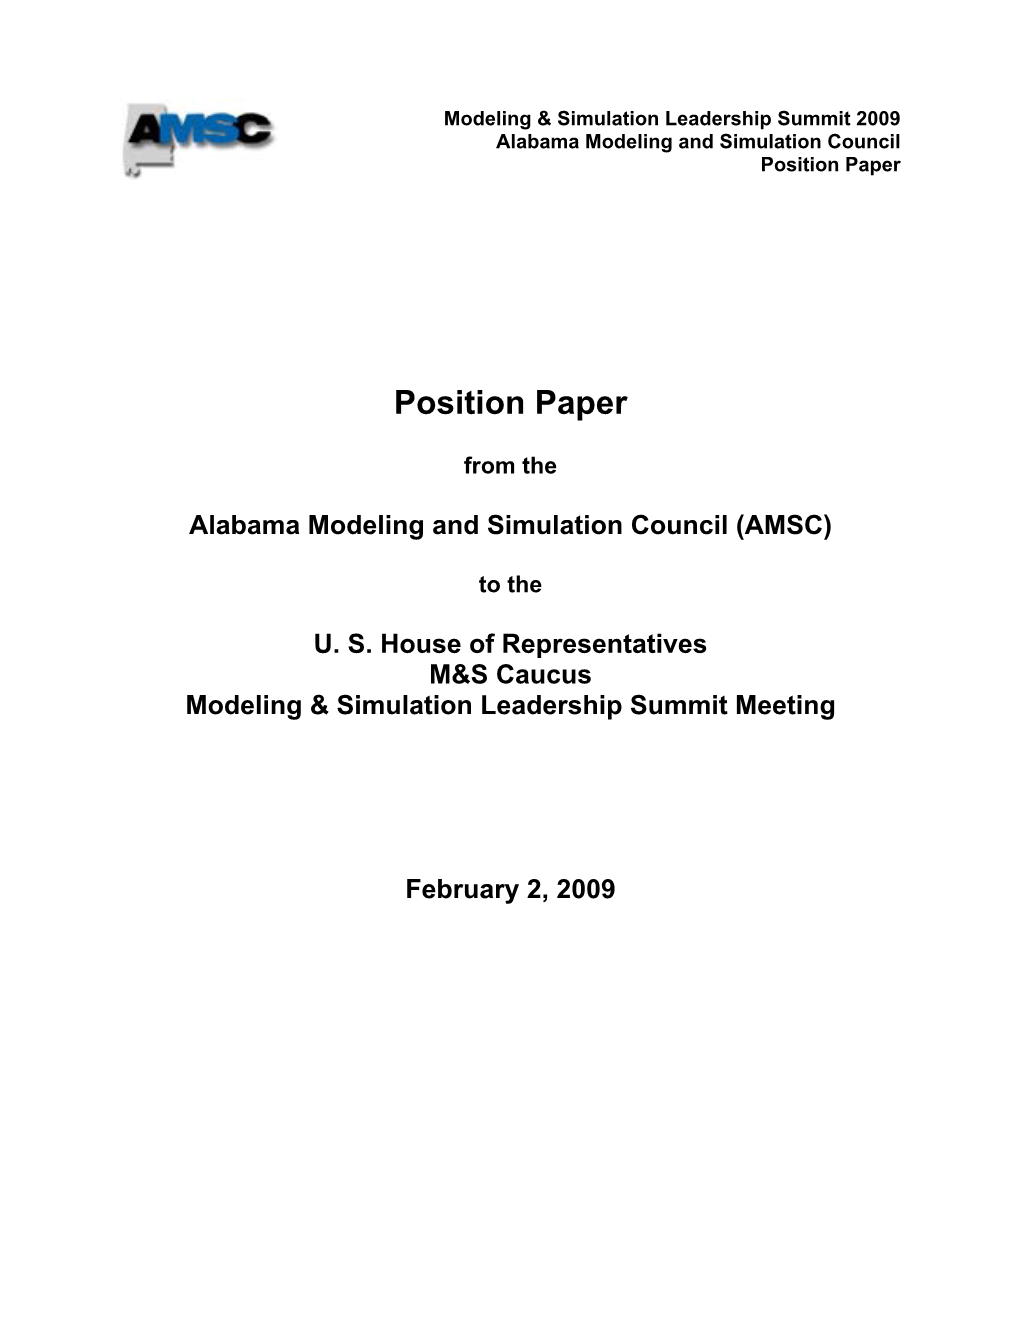 AMSC Position Paper